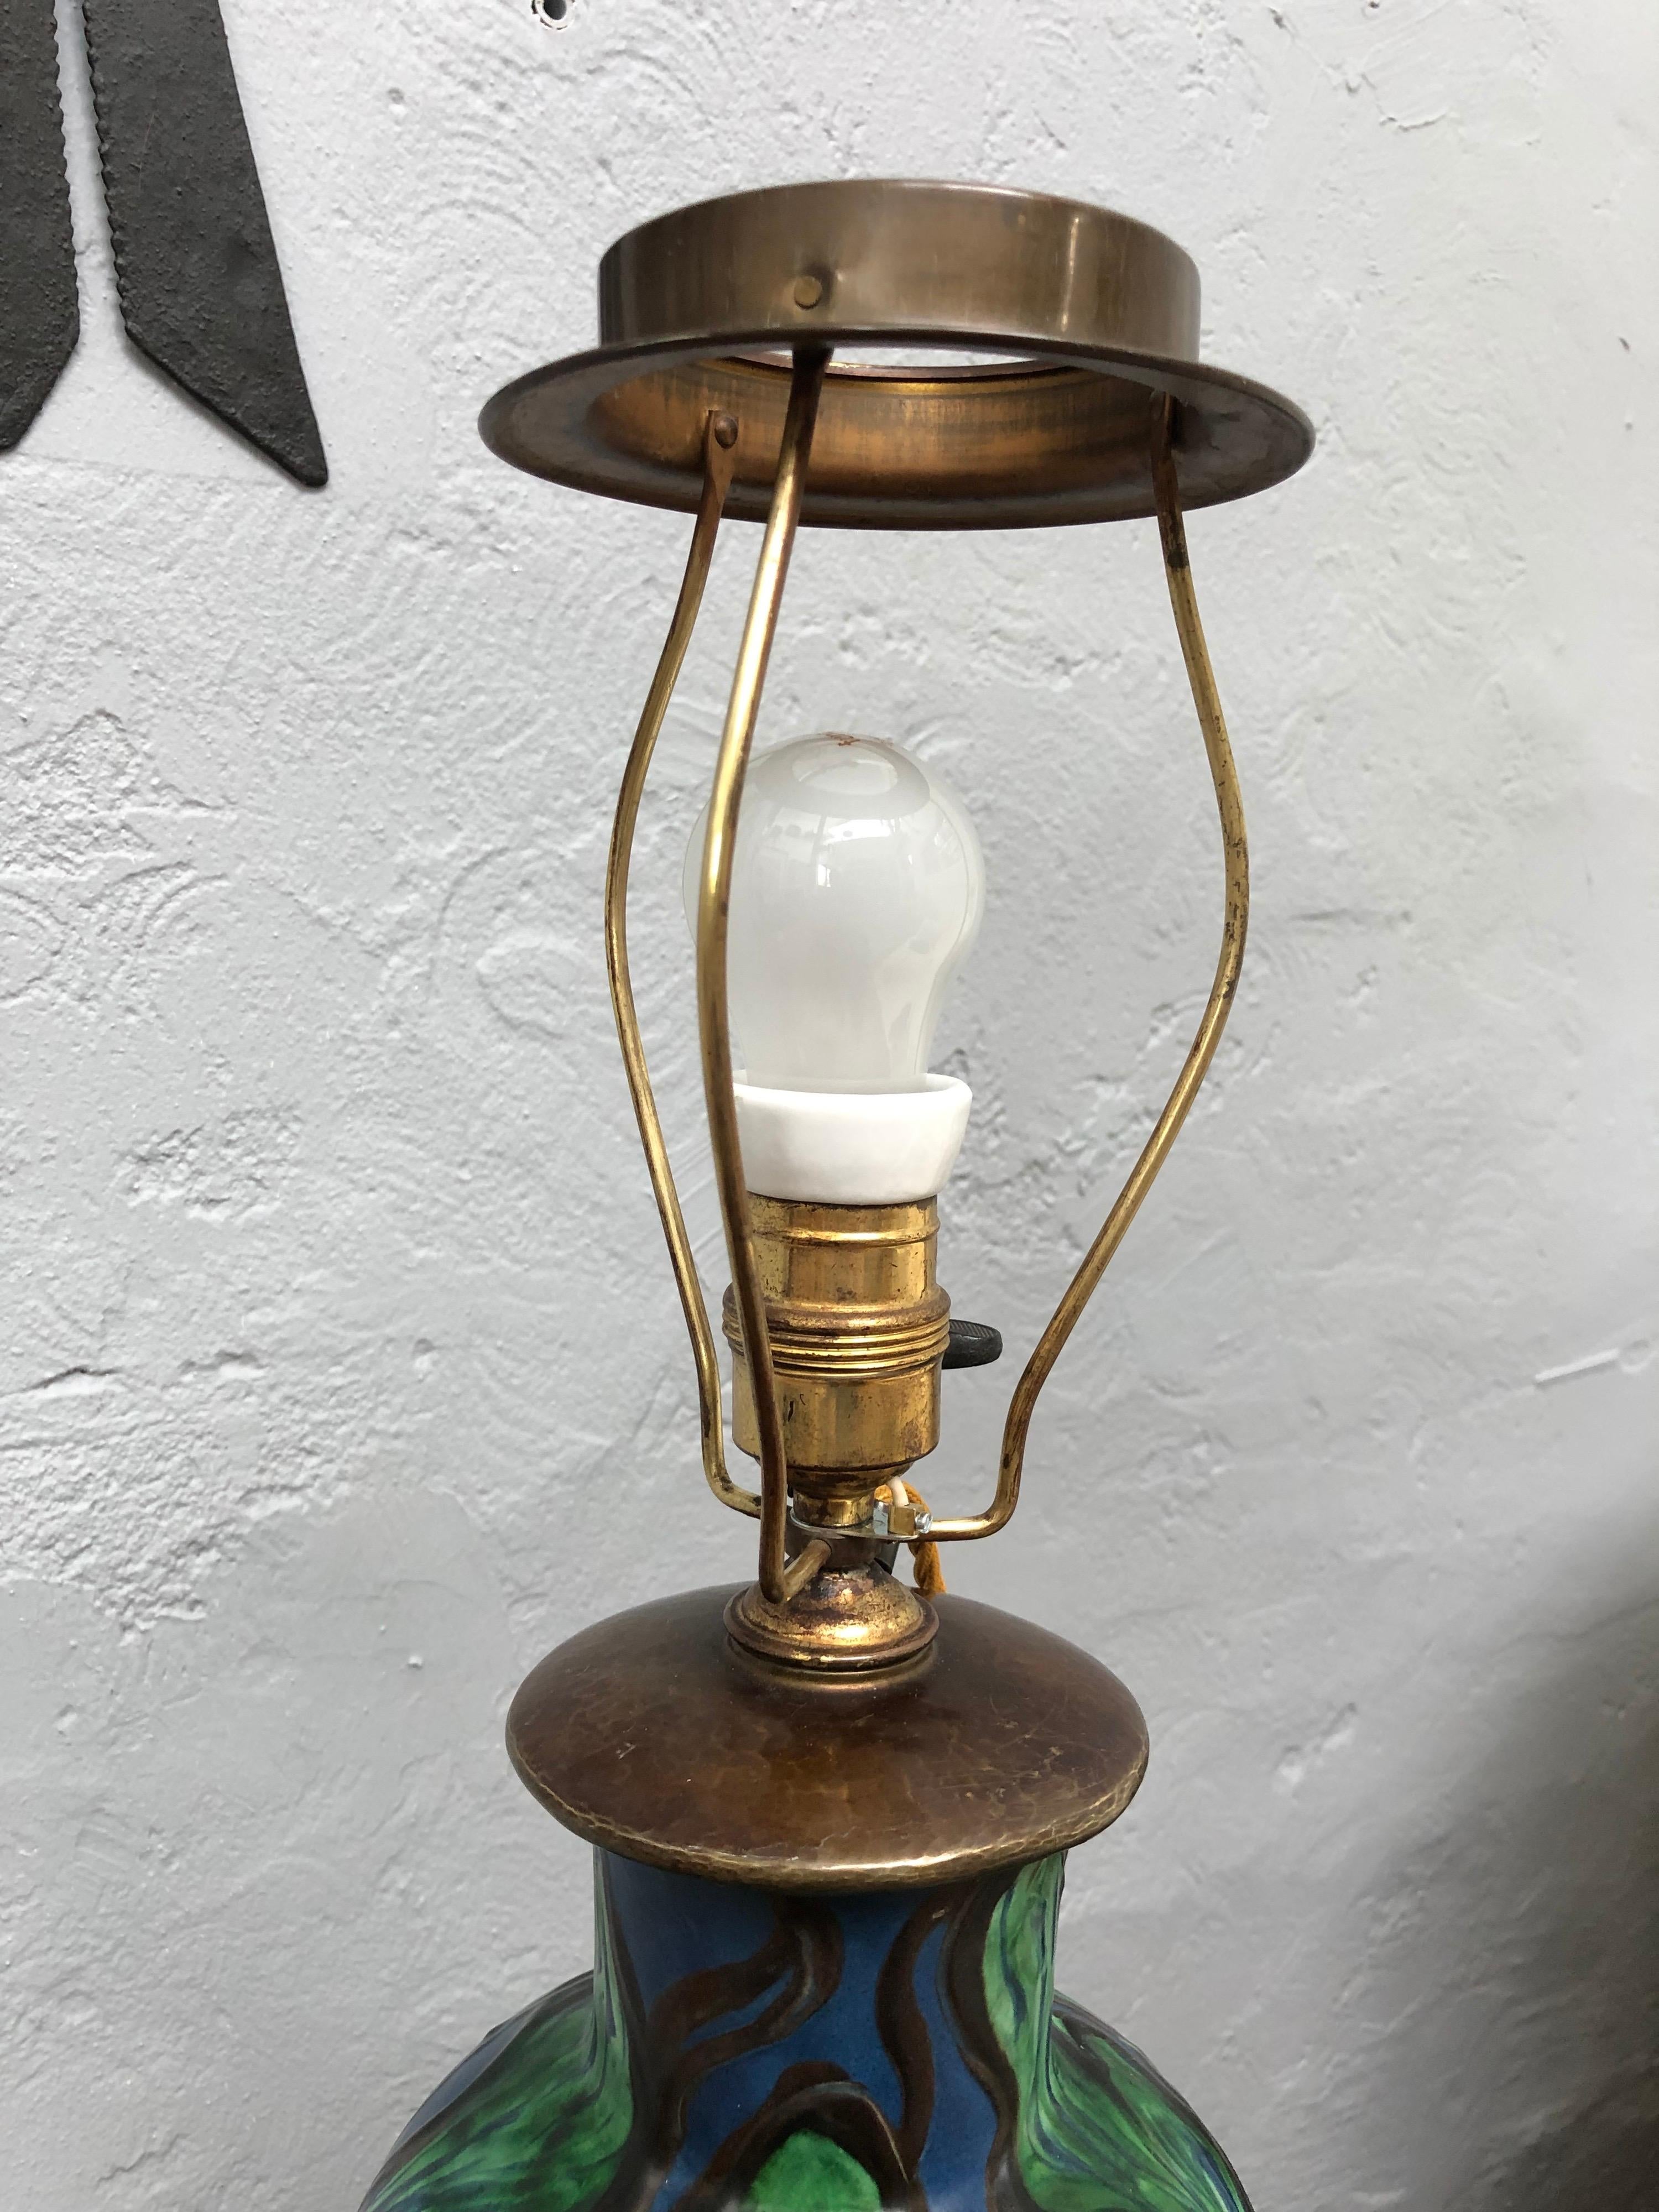 Antique Art Nouveau Painted Pottery Table Lamp by Herman A. Kähler 1